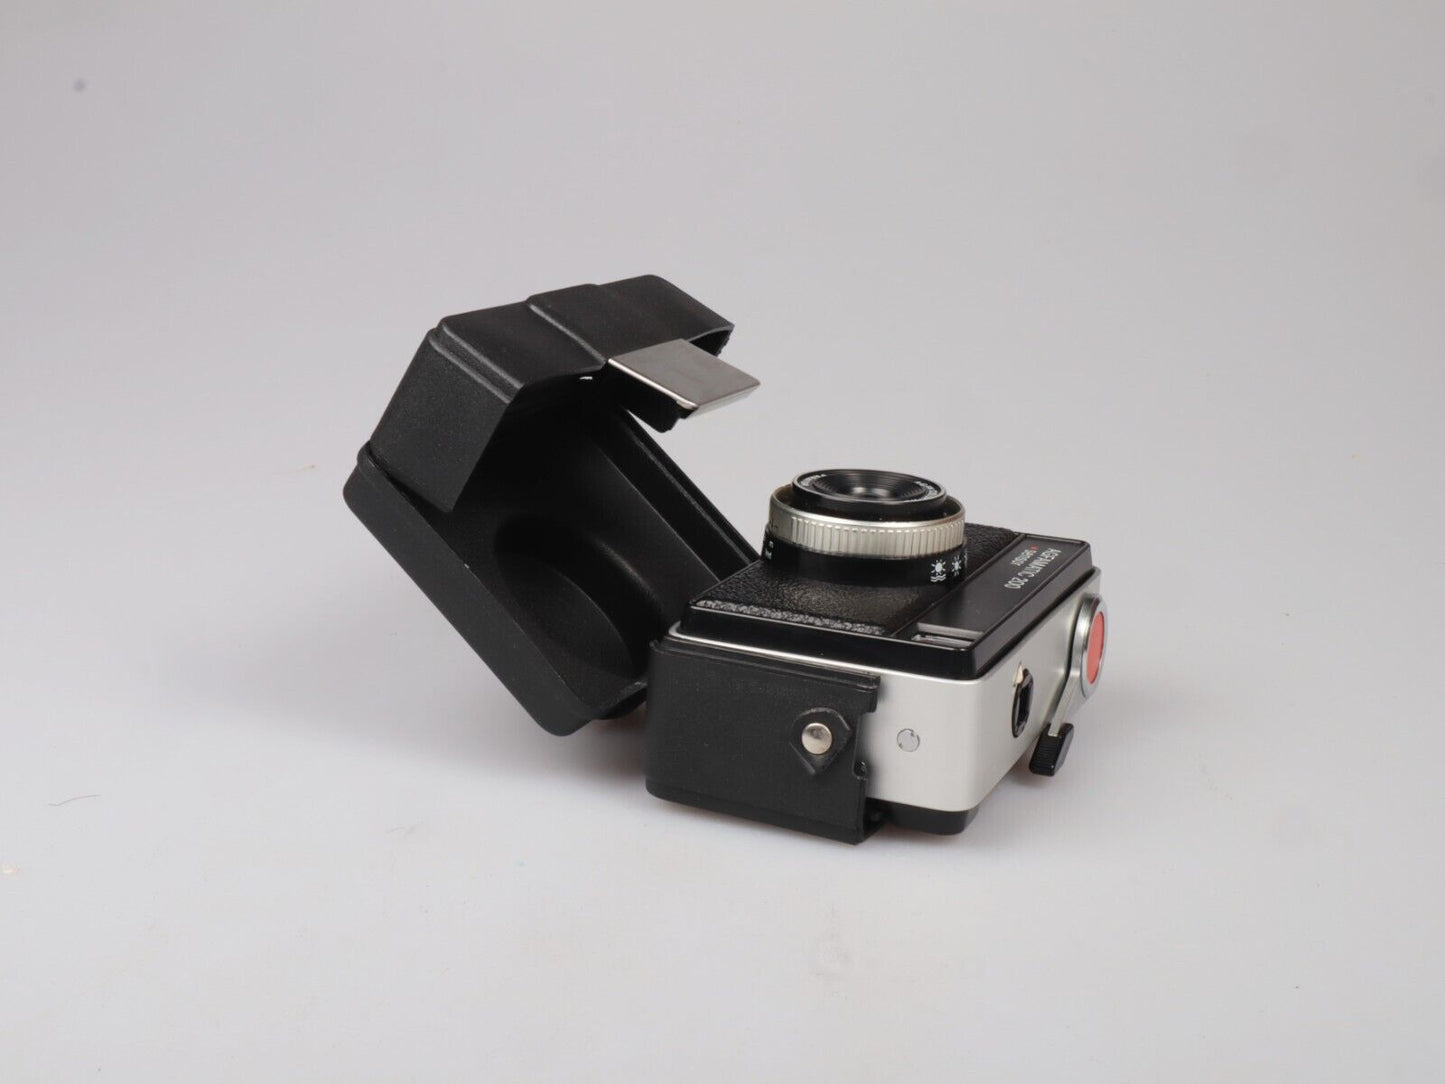 Agfamatic 200 | 126 mm richt-en-schiet-filmcamera | Zwart zilver 